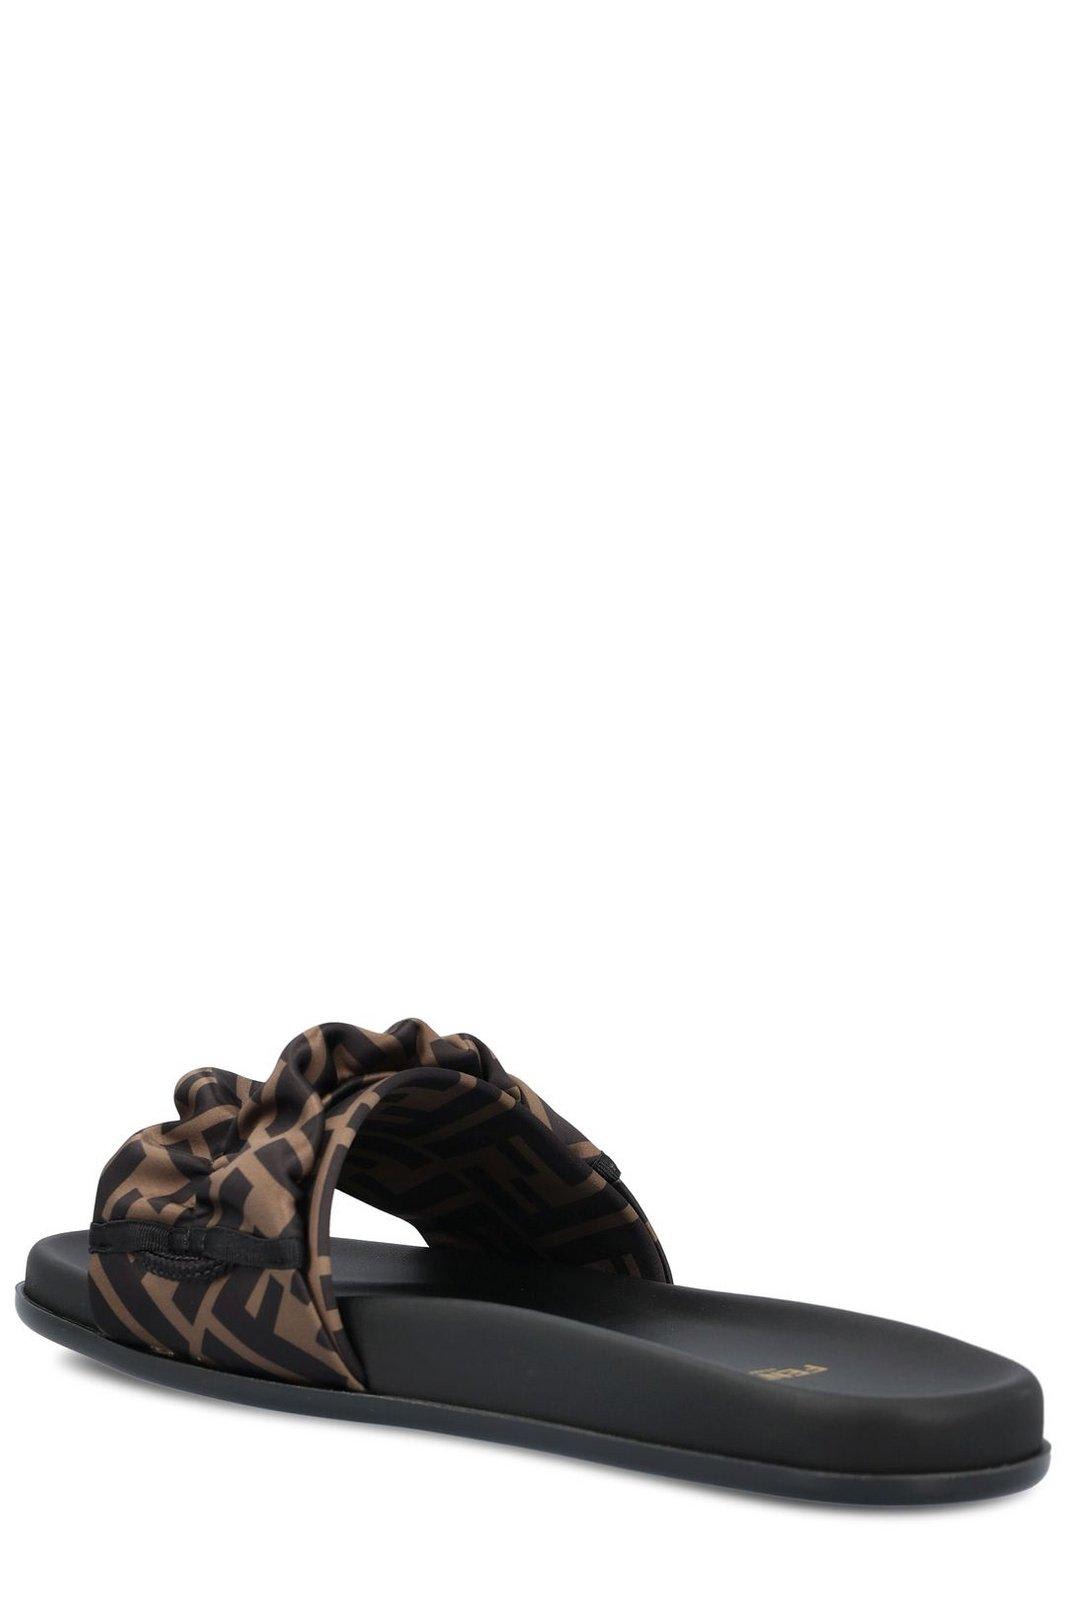 Shop Fendi Toggle Fastening Ff Slide Sandals In Brown